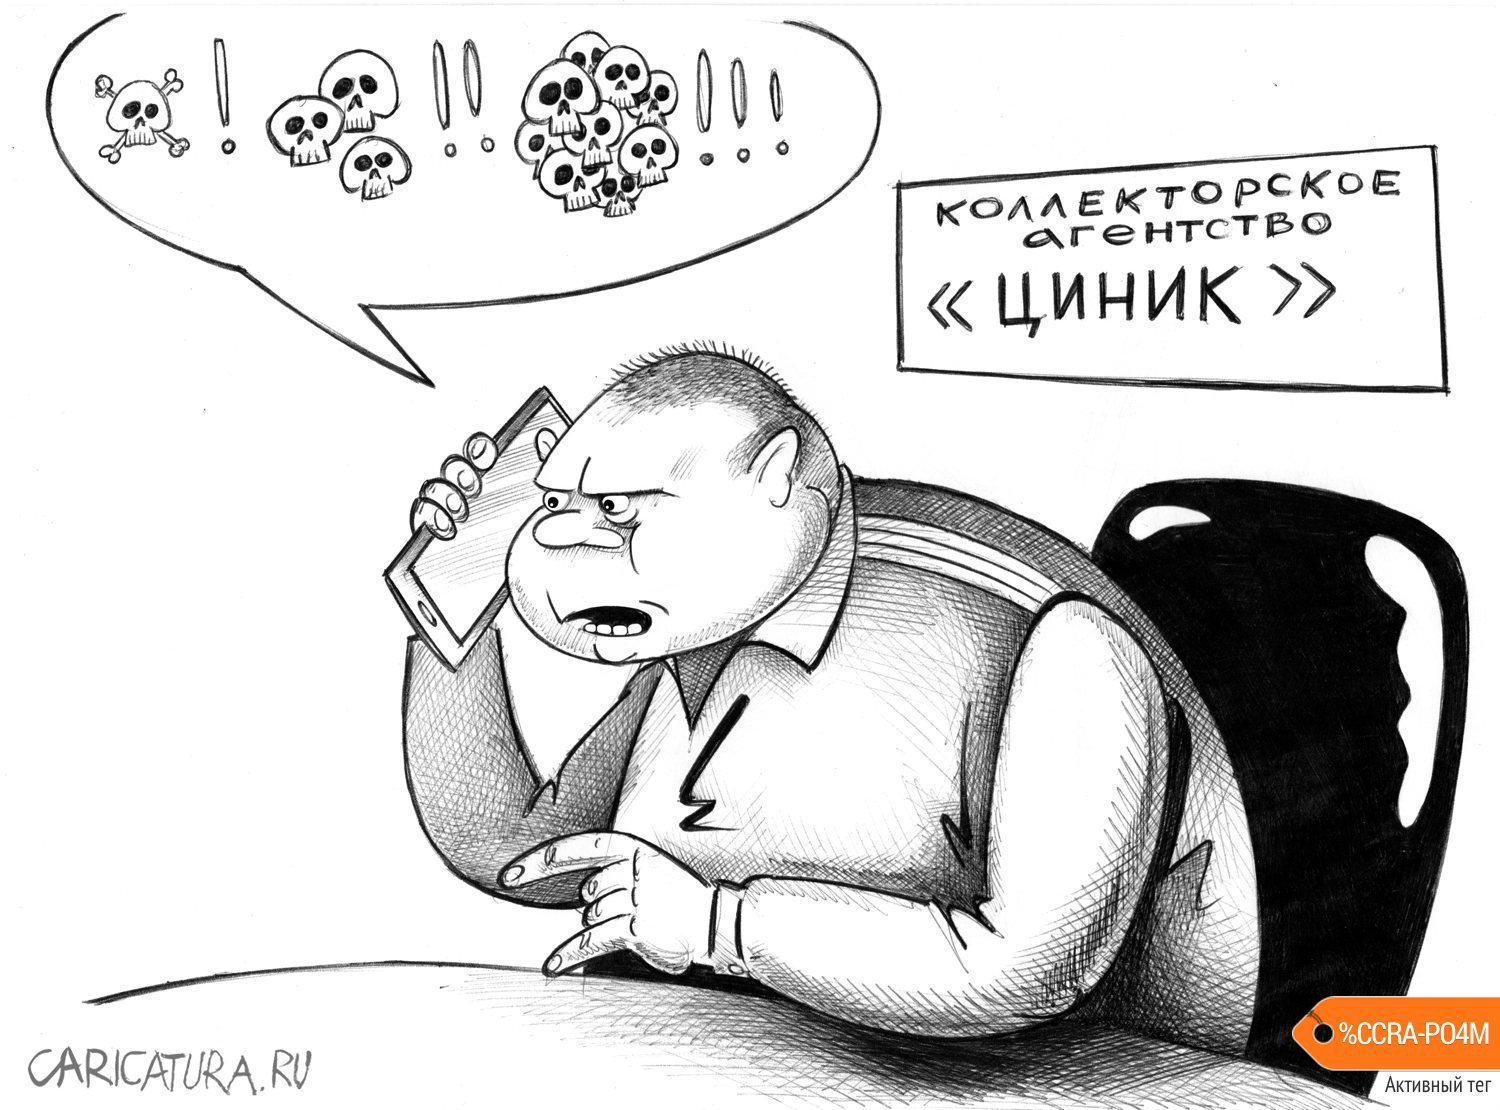 Карикатура "Циник", Сергей Корсун